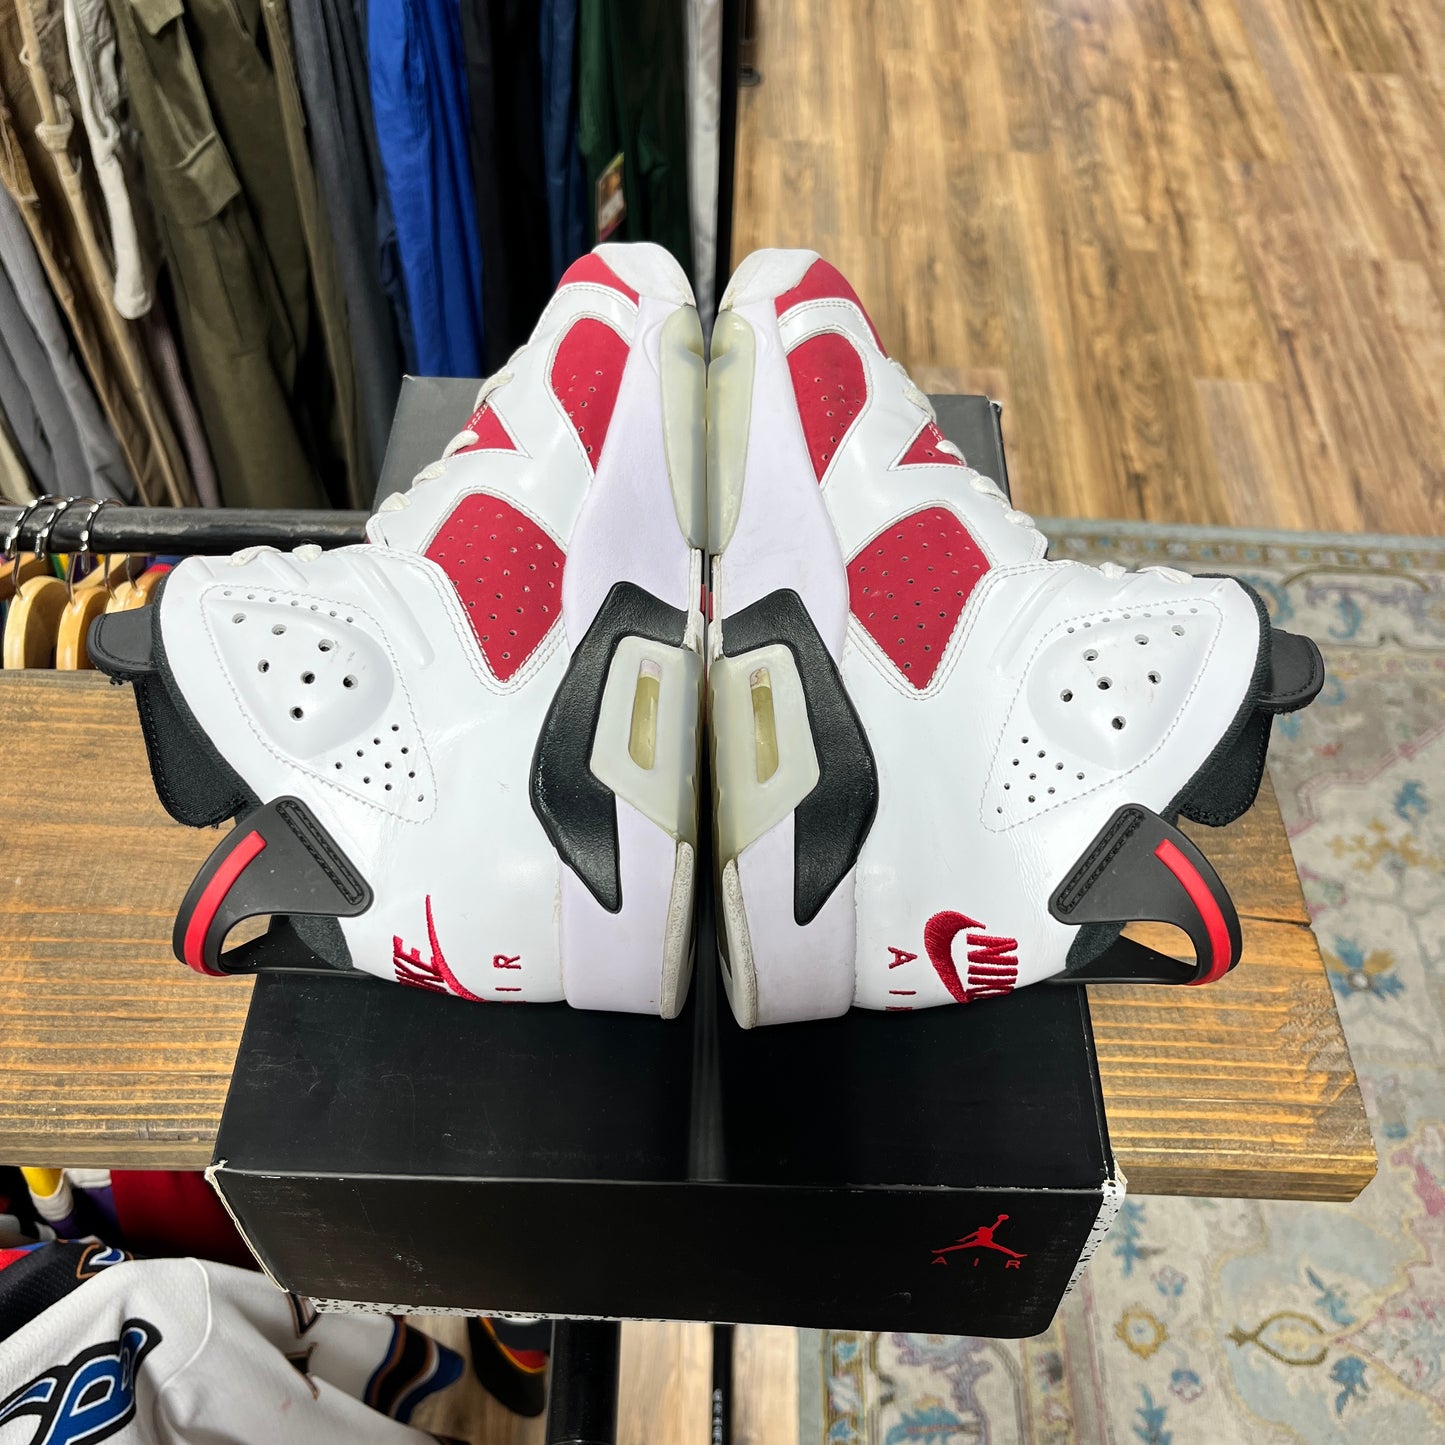 Jordan 6 'Carmine' Size 9